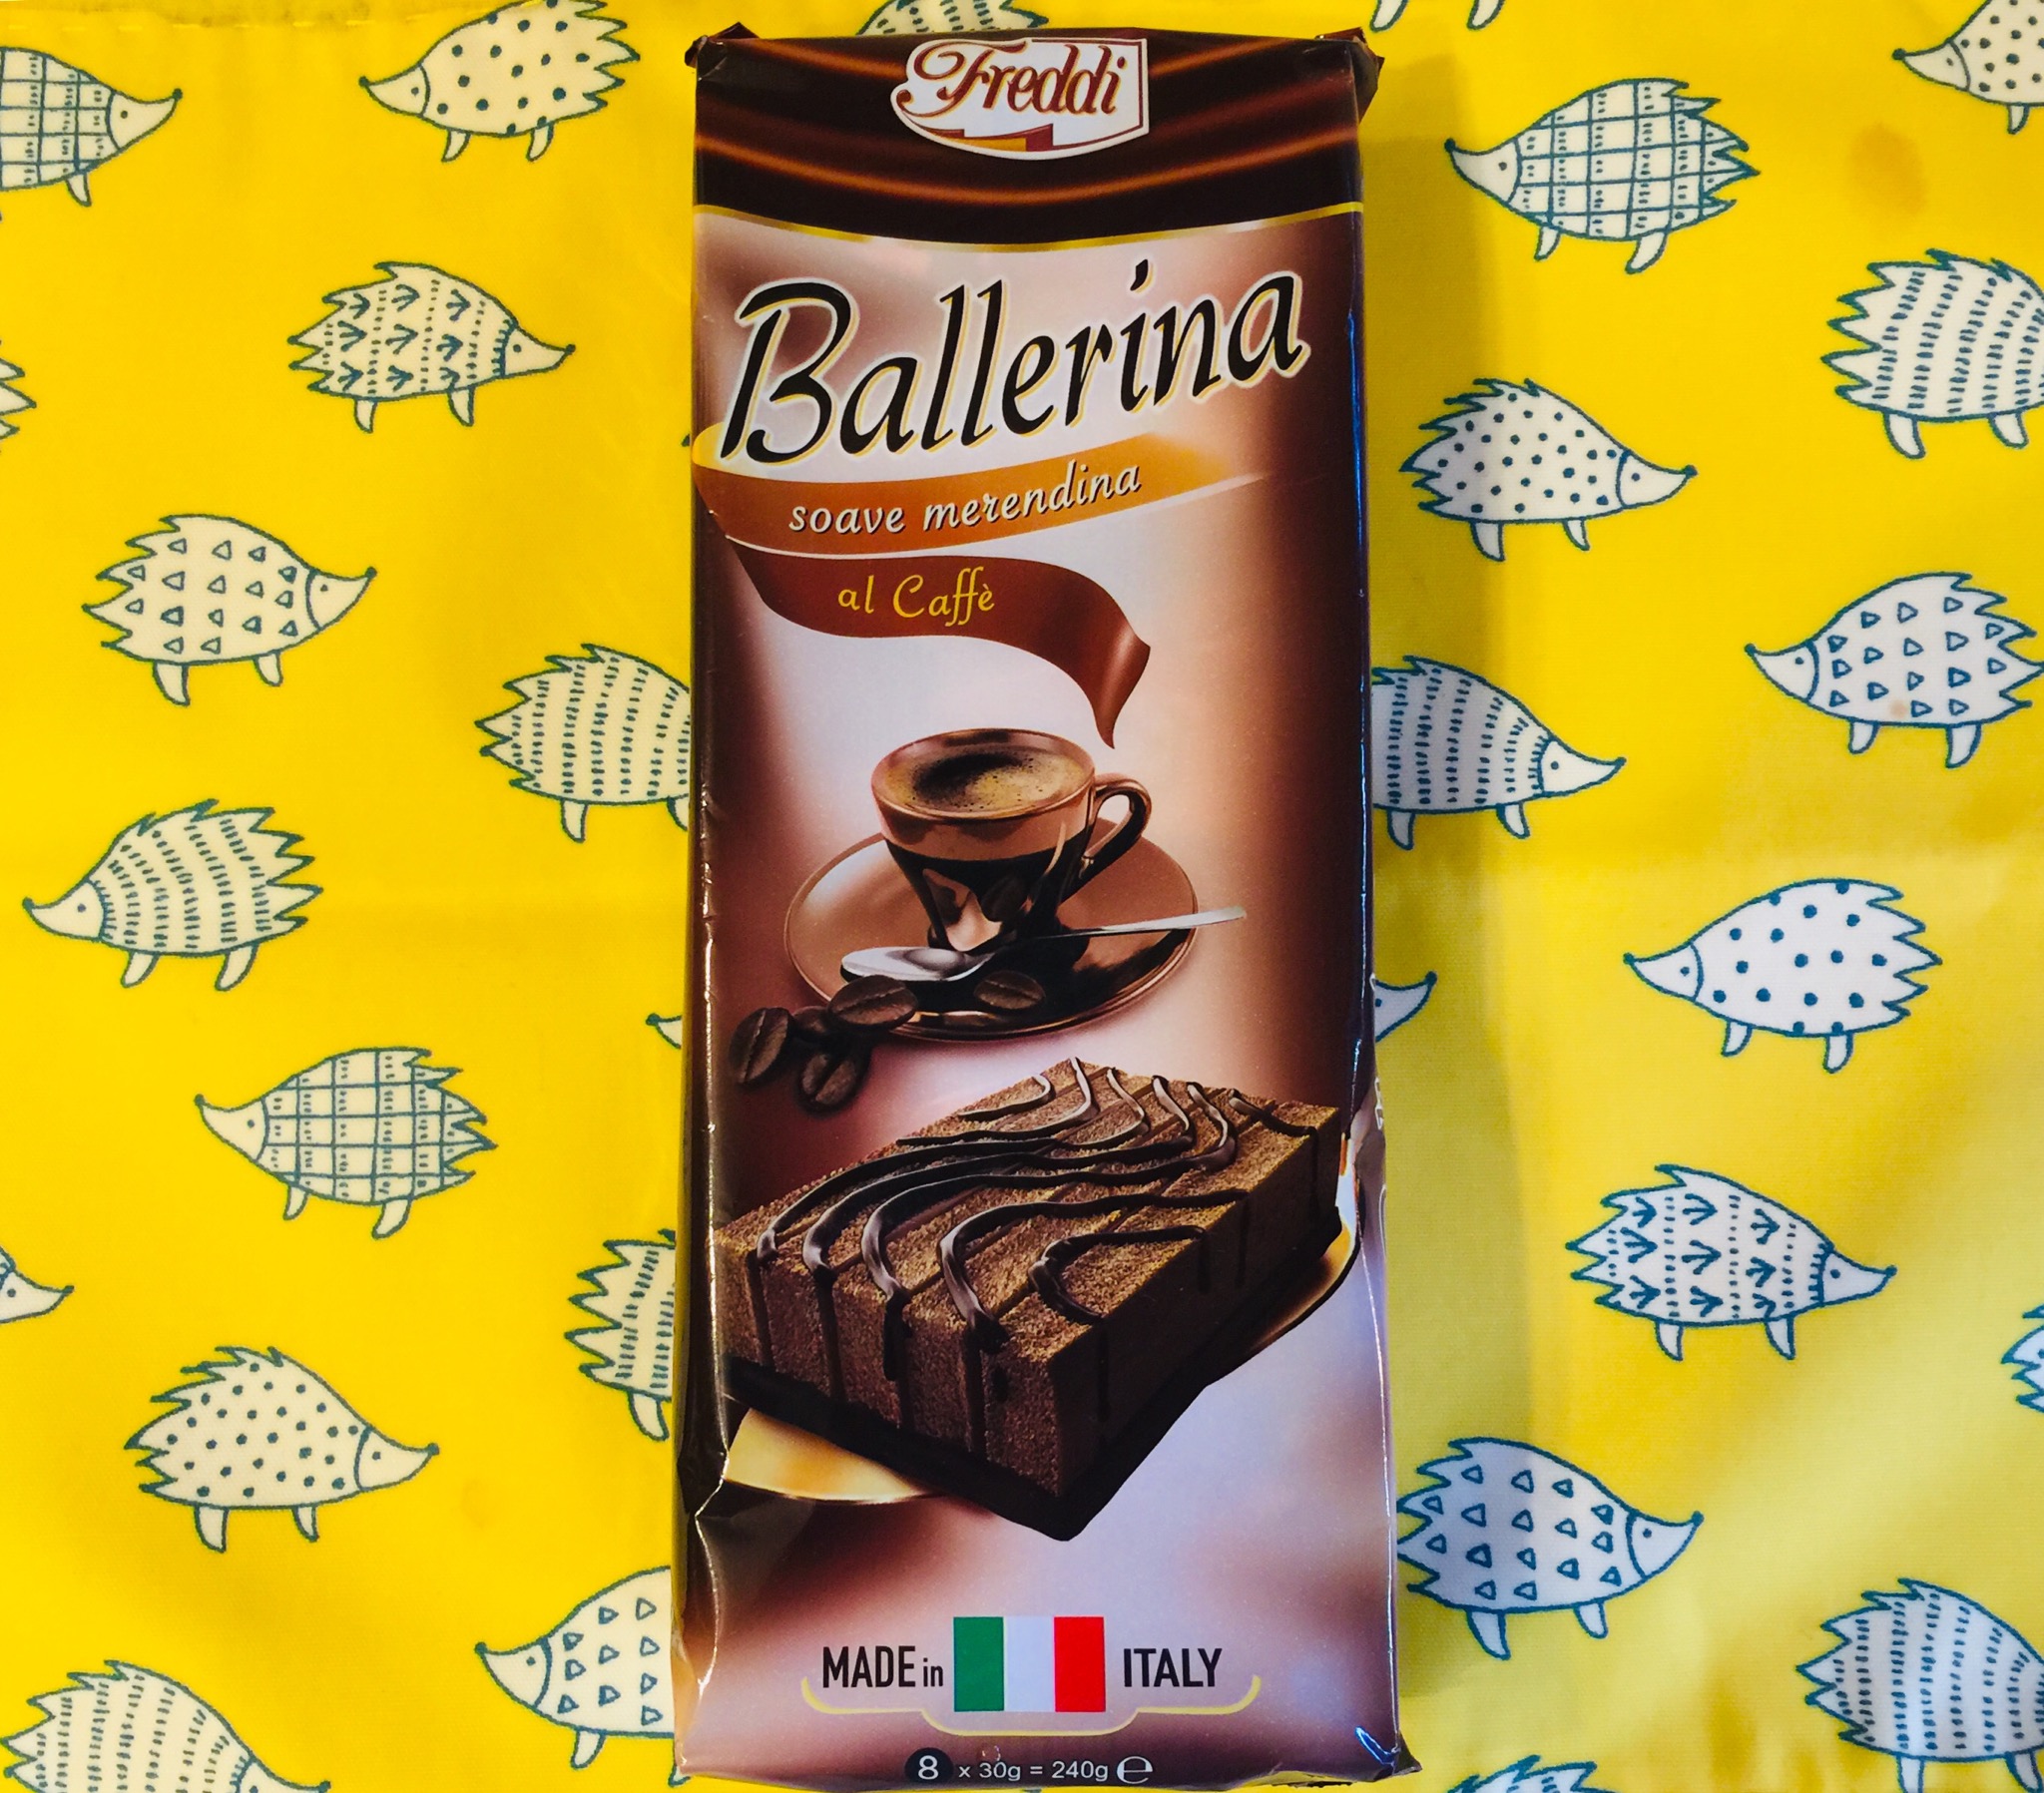 業務スーパー チョコレートケーキ イタリア産 業務スーパーの商品をレポートするブログ